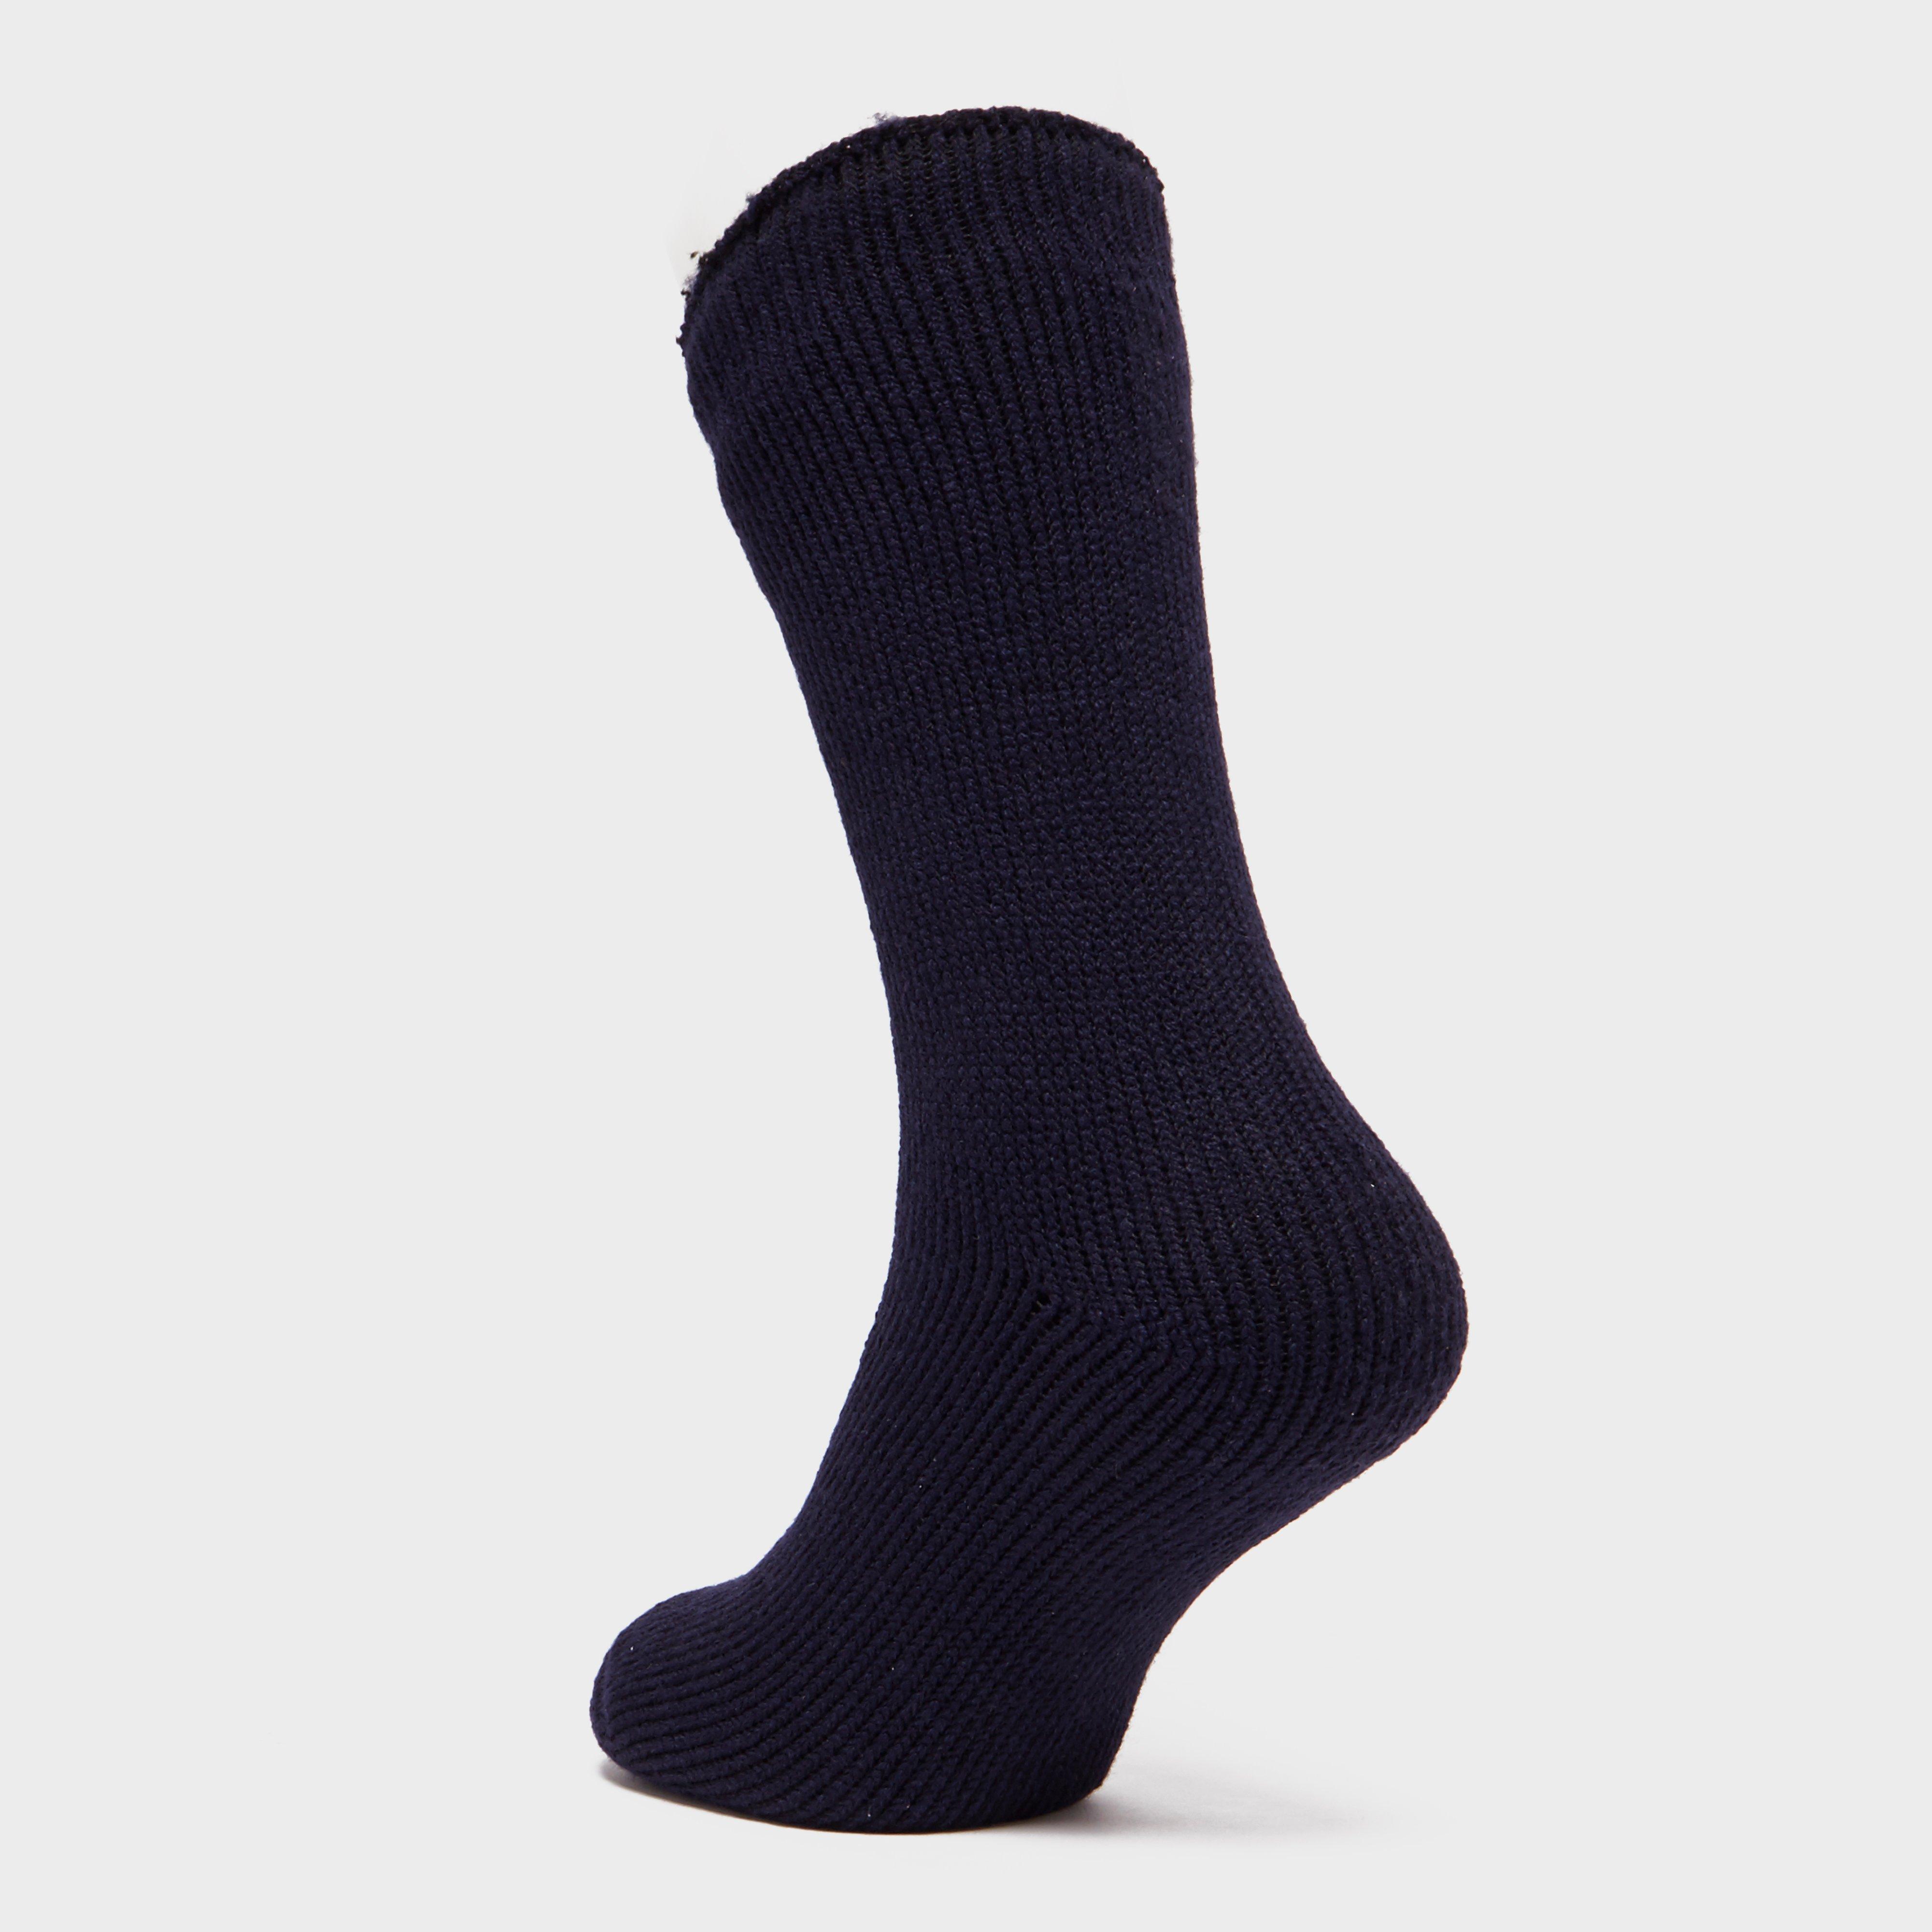 Heat Holders Men's Original Thermal Socks Review